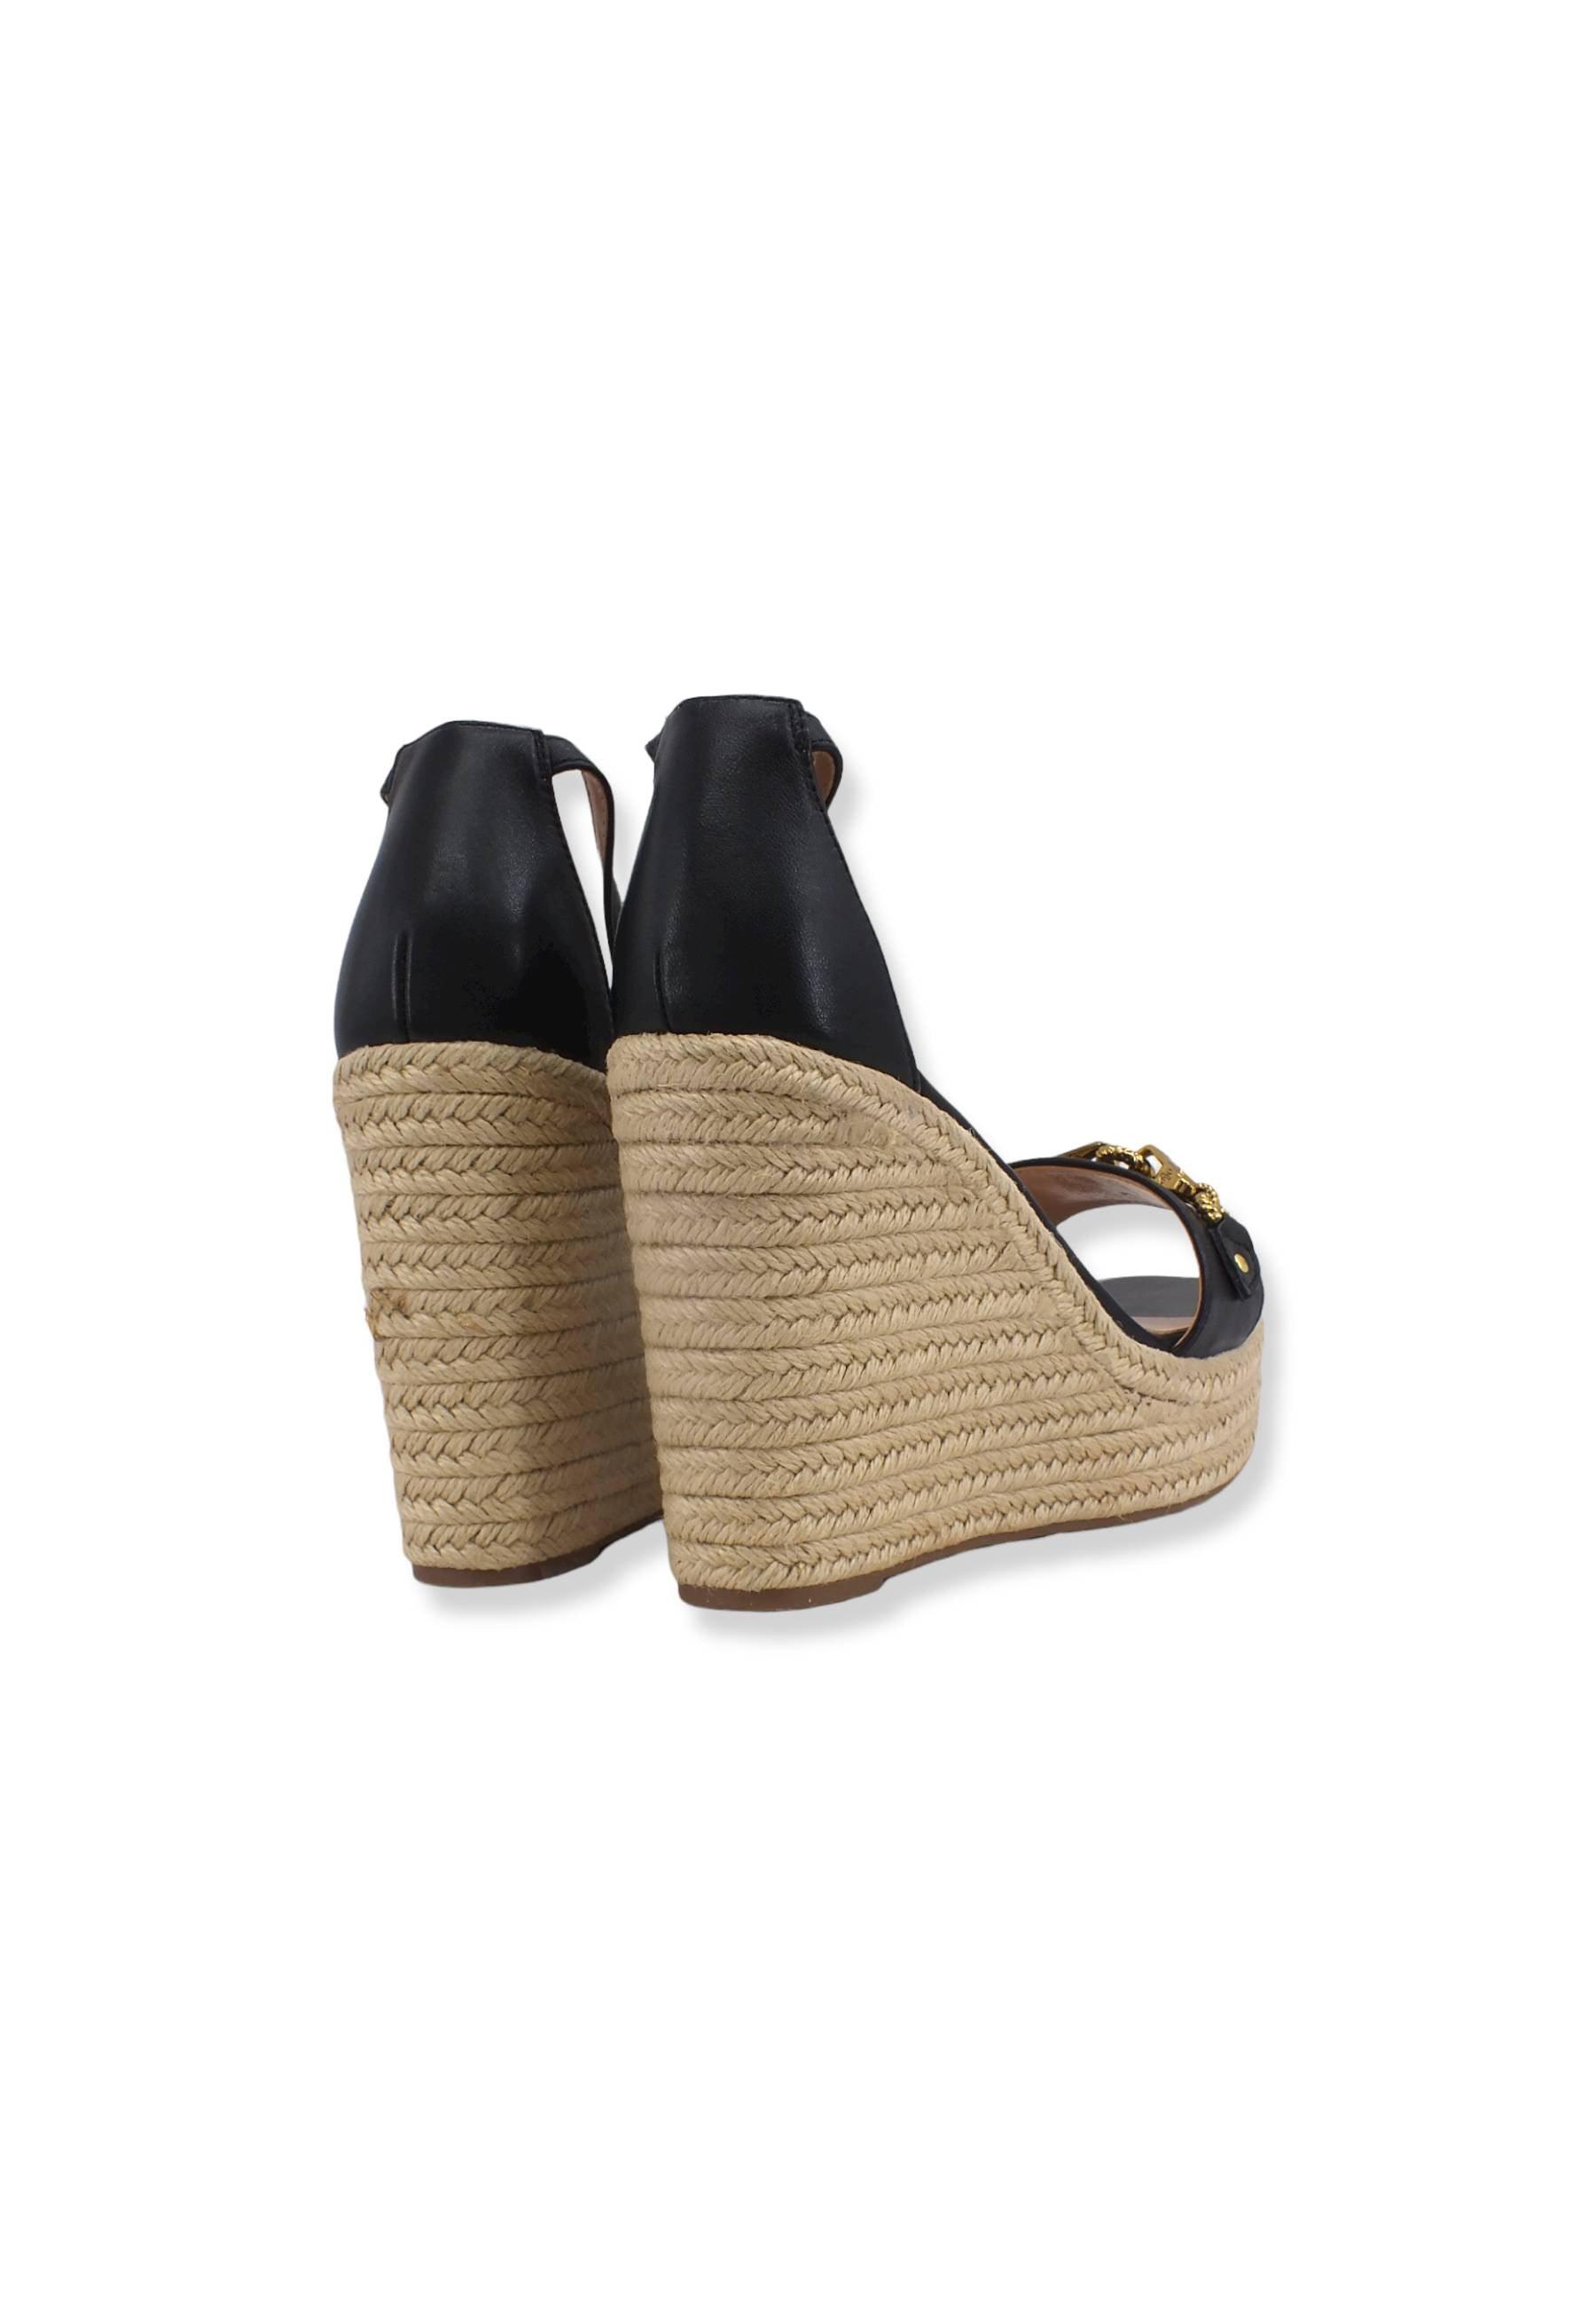 GUESS Sandalo Zeppa Corda Black FL6WENLEA03 - Sandrini Calzature e Abbigliamento